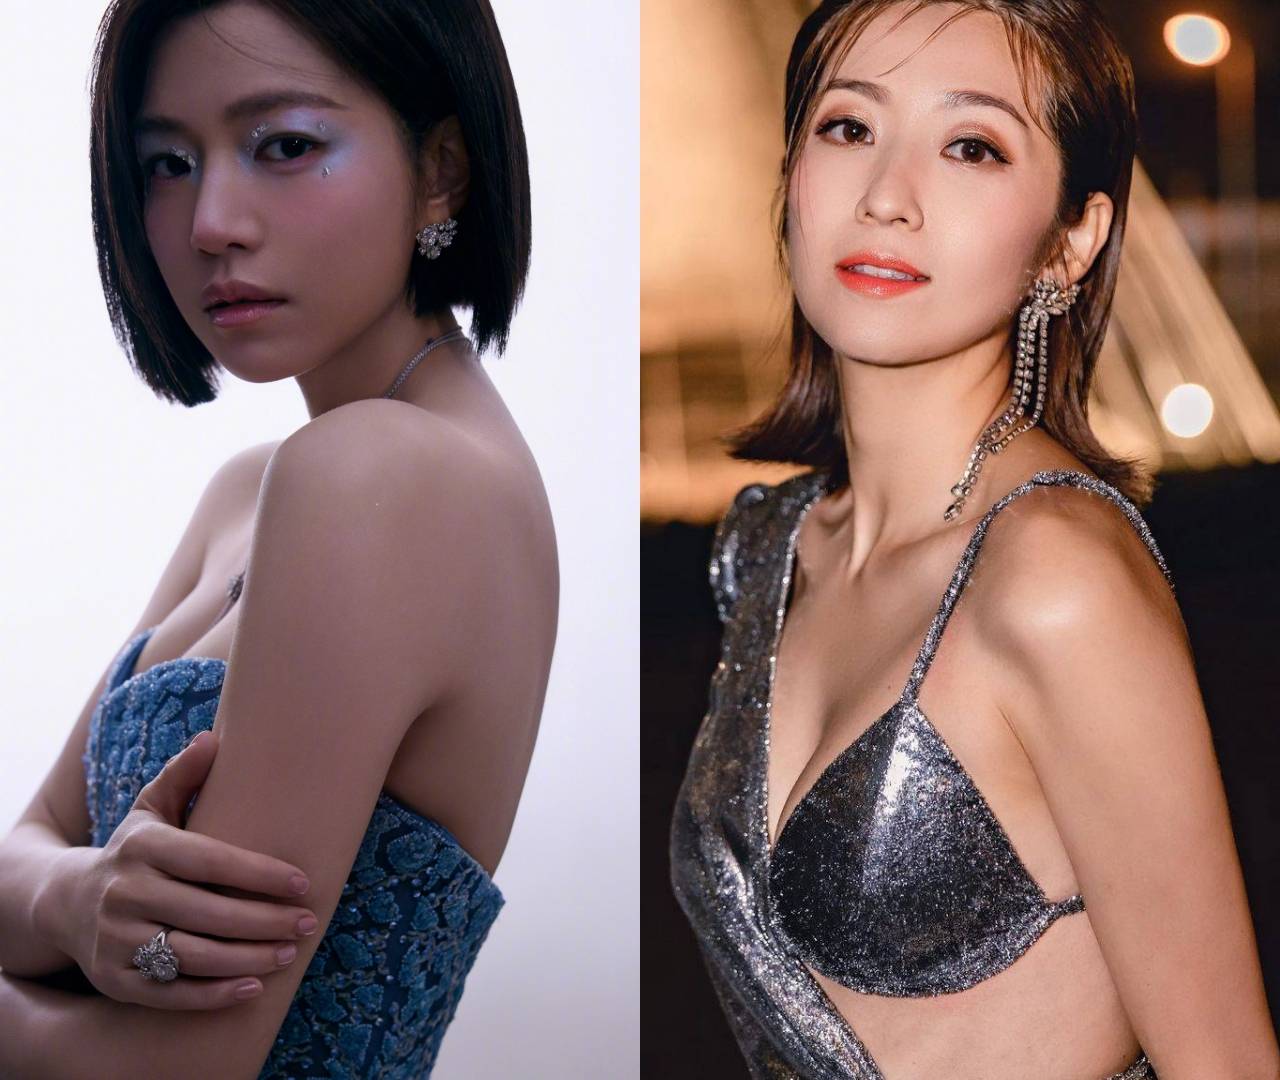 陈妍希 有网民指现年40岁的陈妍希新造型劲似42岁的Yoyo陈自瑶。